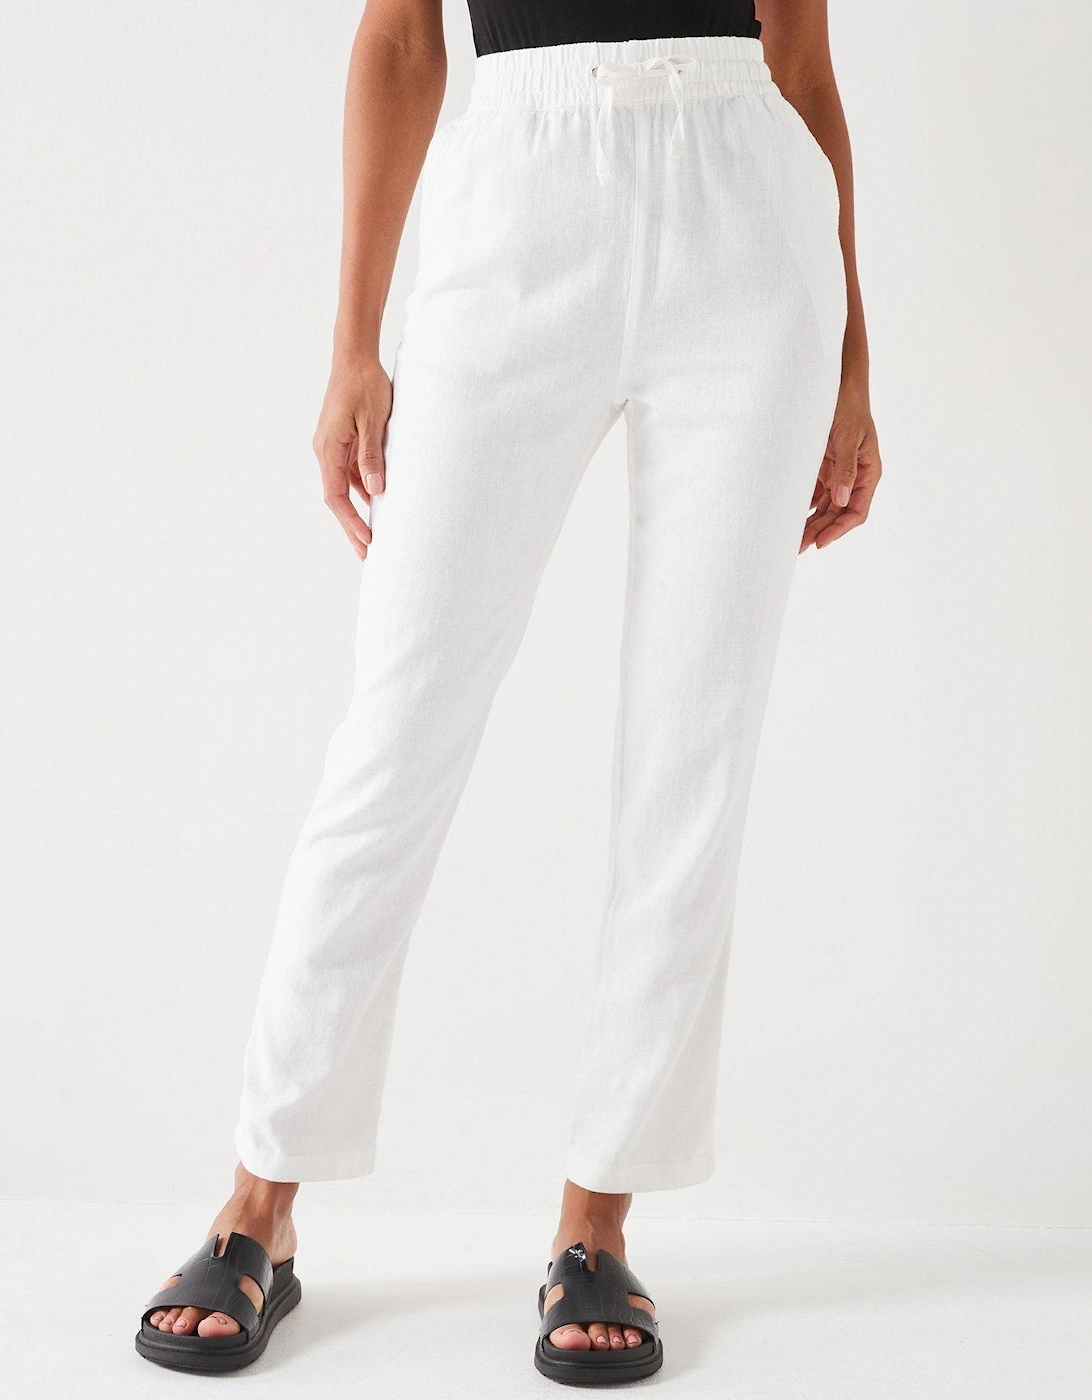 Short Linen Blend Trousers - White, 7 of 6